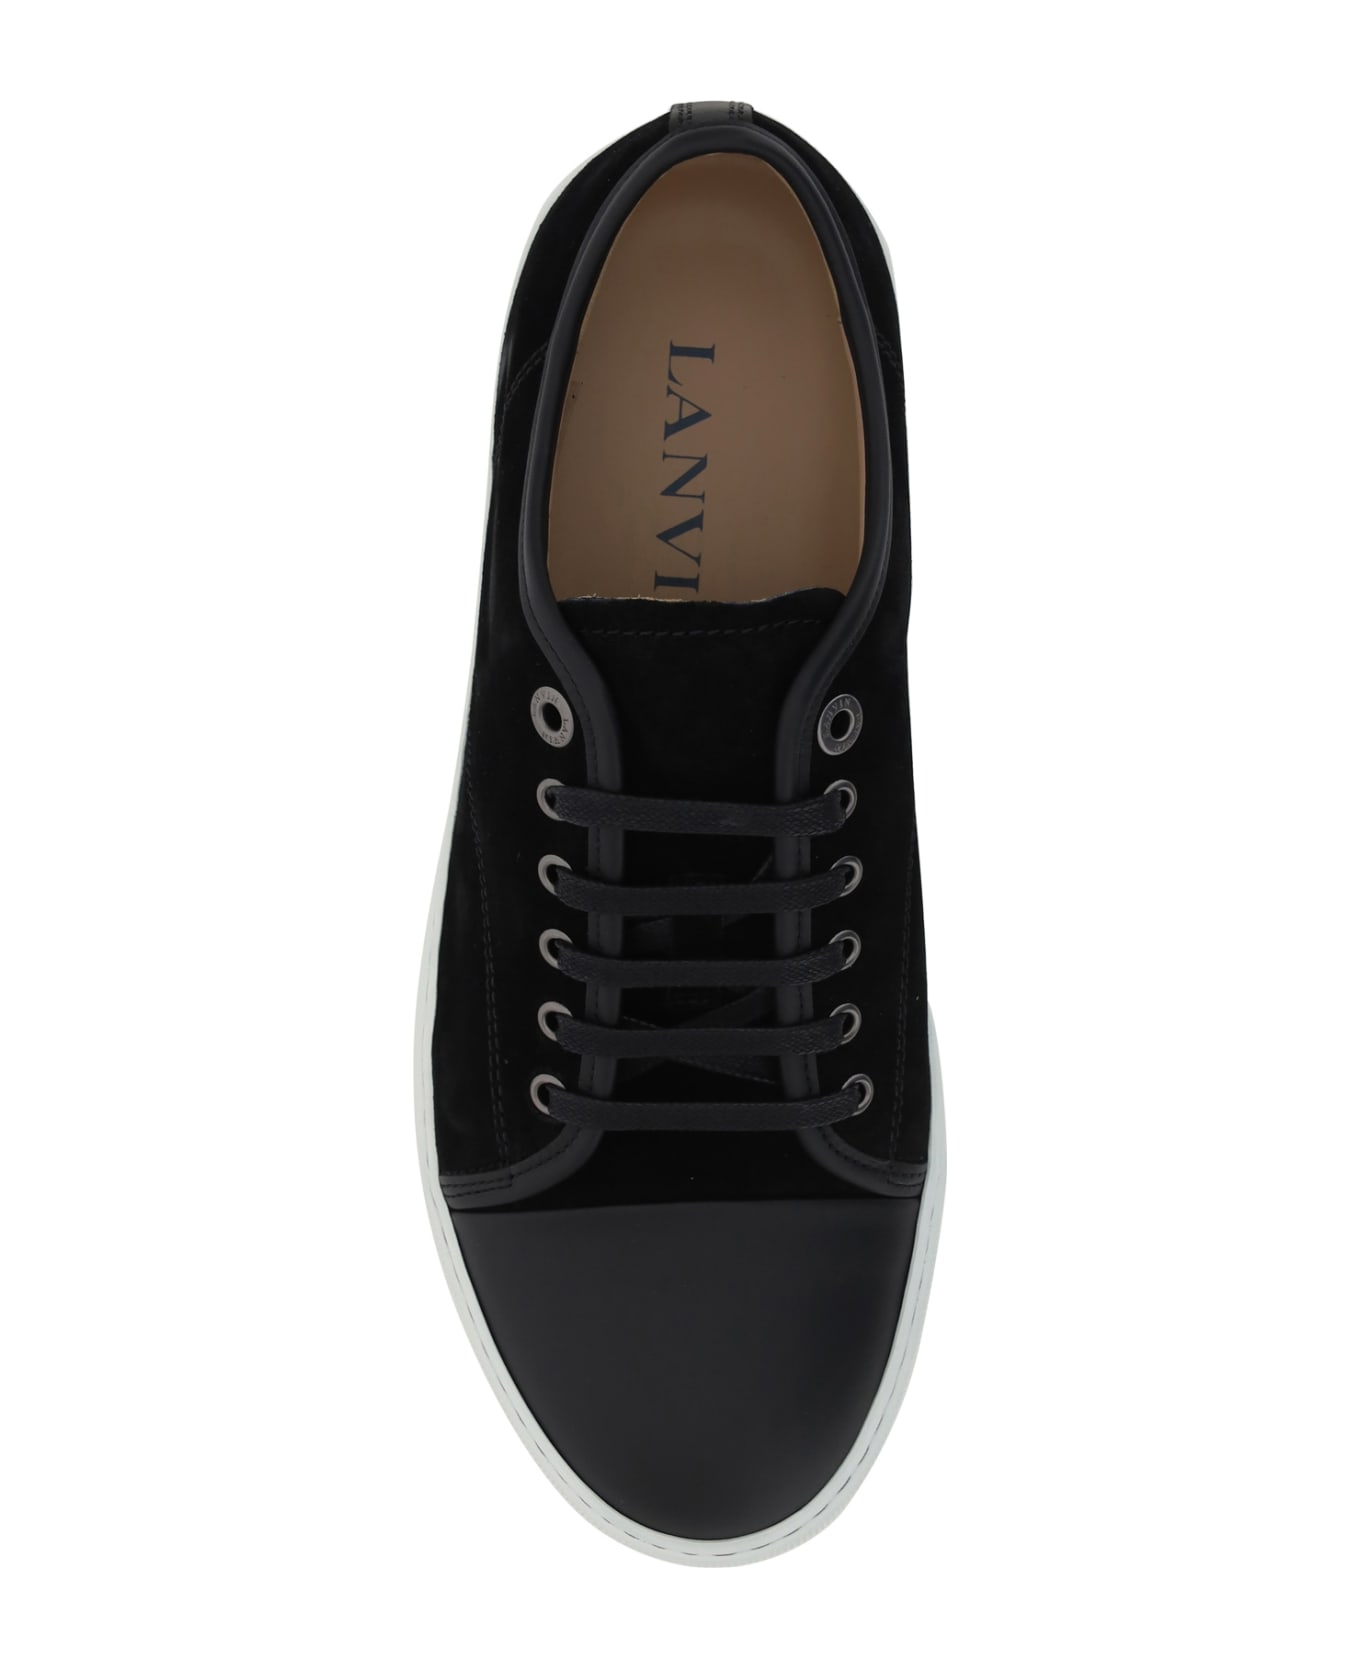 Lanvin Captoe Low Sneakers - Black スニーカー